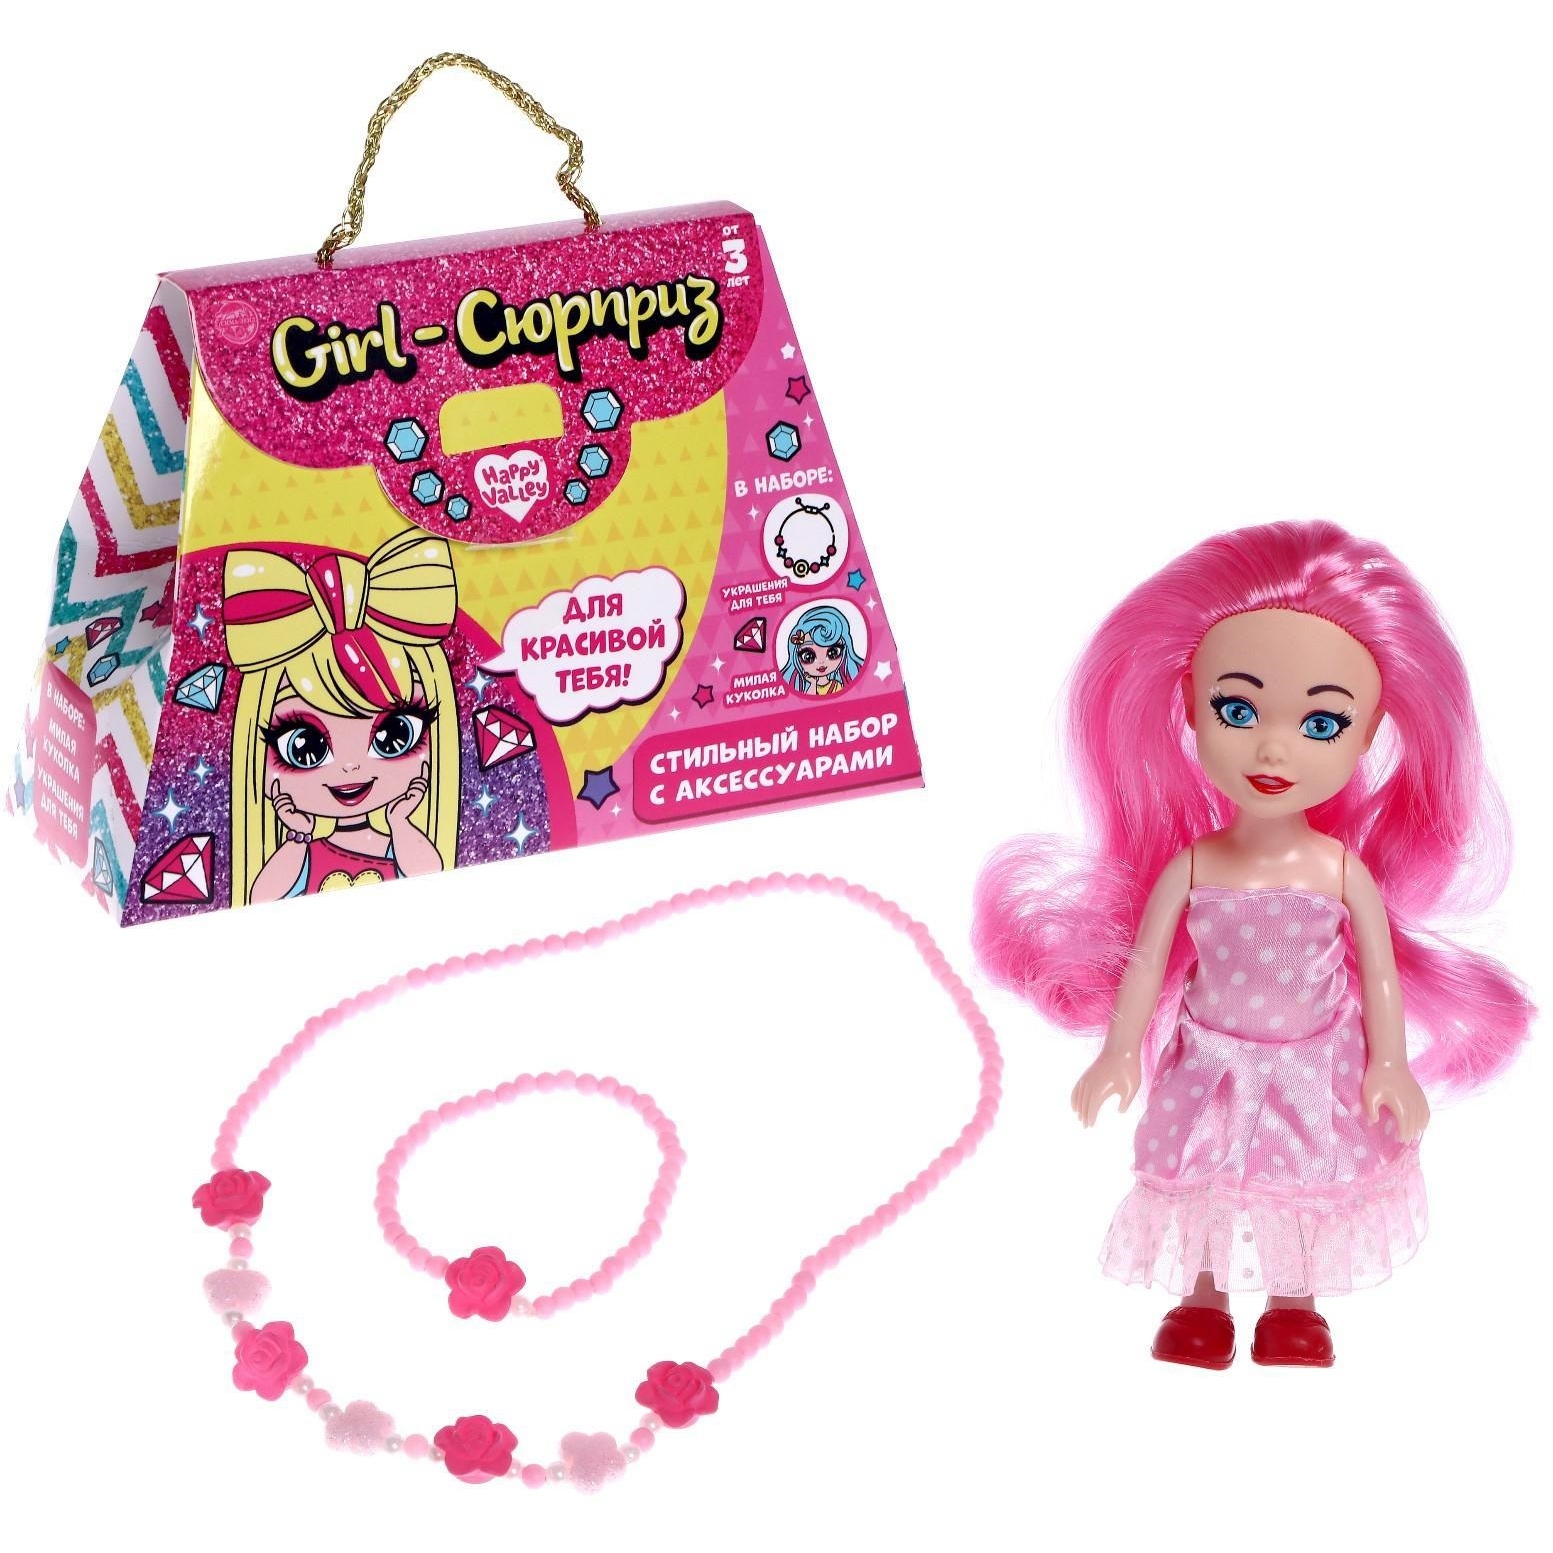 Кукла Happy valley Girl-сюрприз (розовая, 11 см)